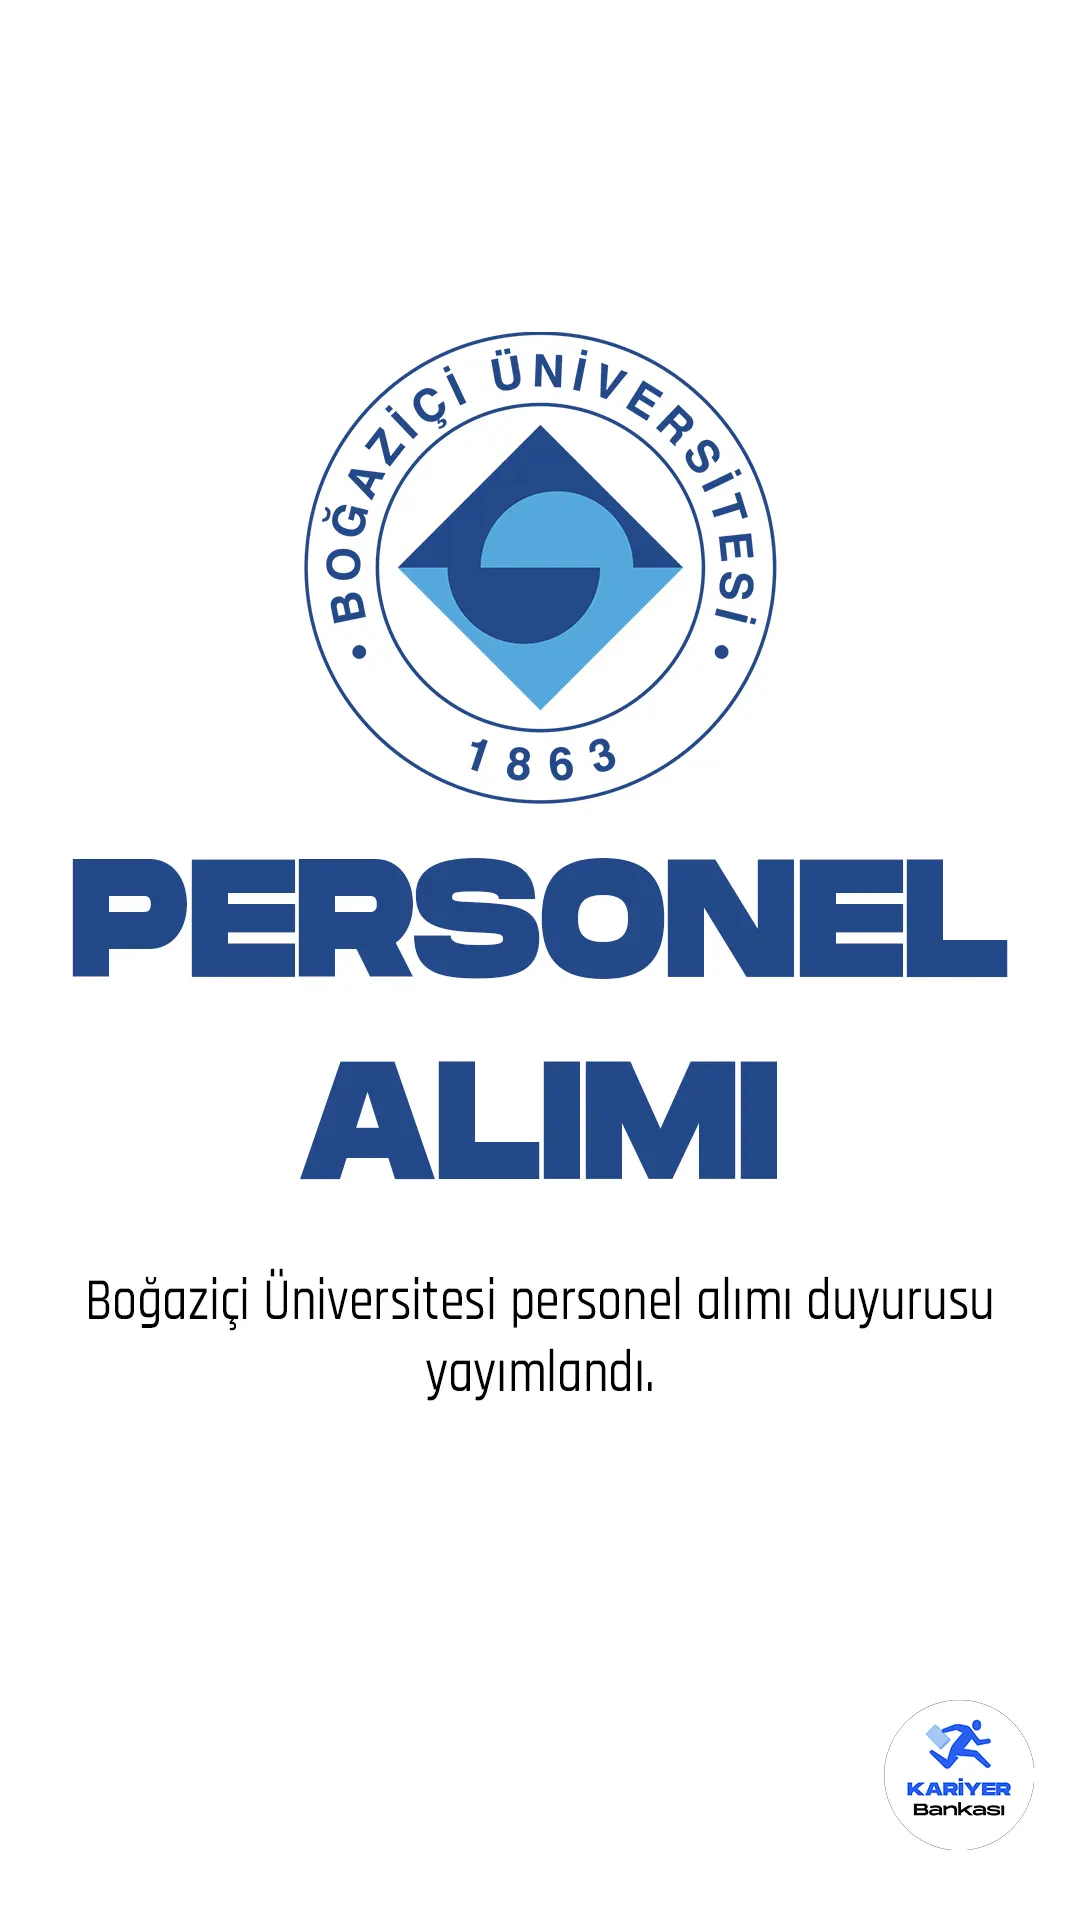 Boğaziçi Üniversitesi personel alımı duyurusu Resmi Gazete'nin 31 Mart 2023 tarihli sayısında yayımlandı. Yayımlanan duyuruda, Boğaziçi Üniversitesine sözleşmeli bilişim personeli alımı yapılacağı kaydedildi. Başvurular 31 Mart -14 Nisan 2023 tarihleri arasında alınacak.